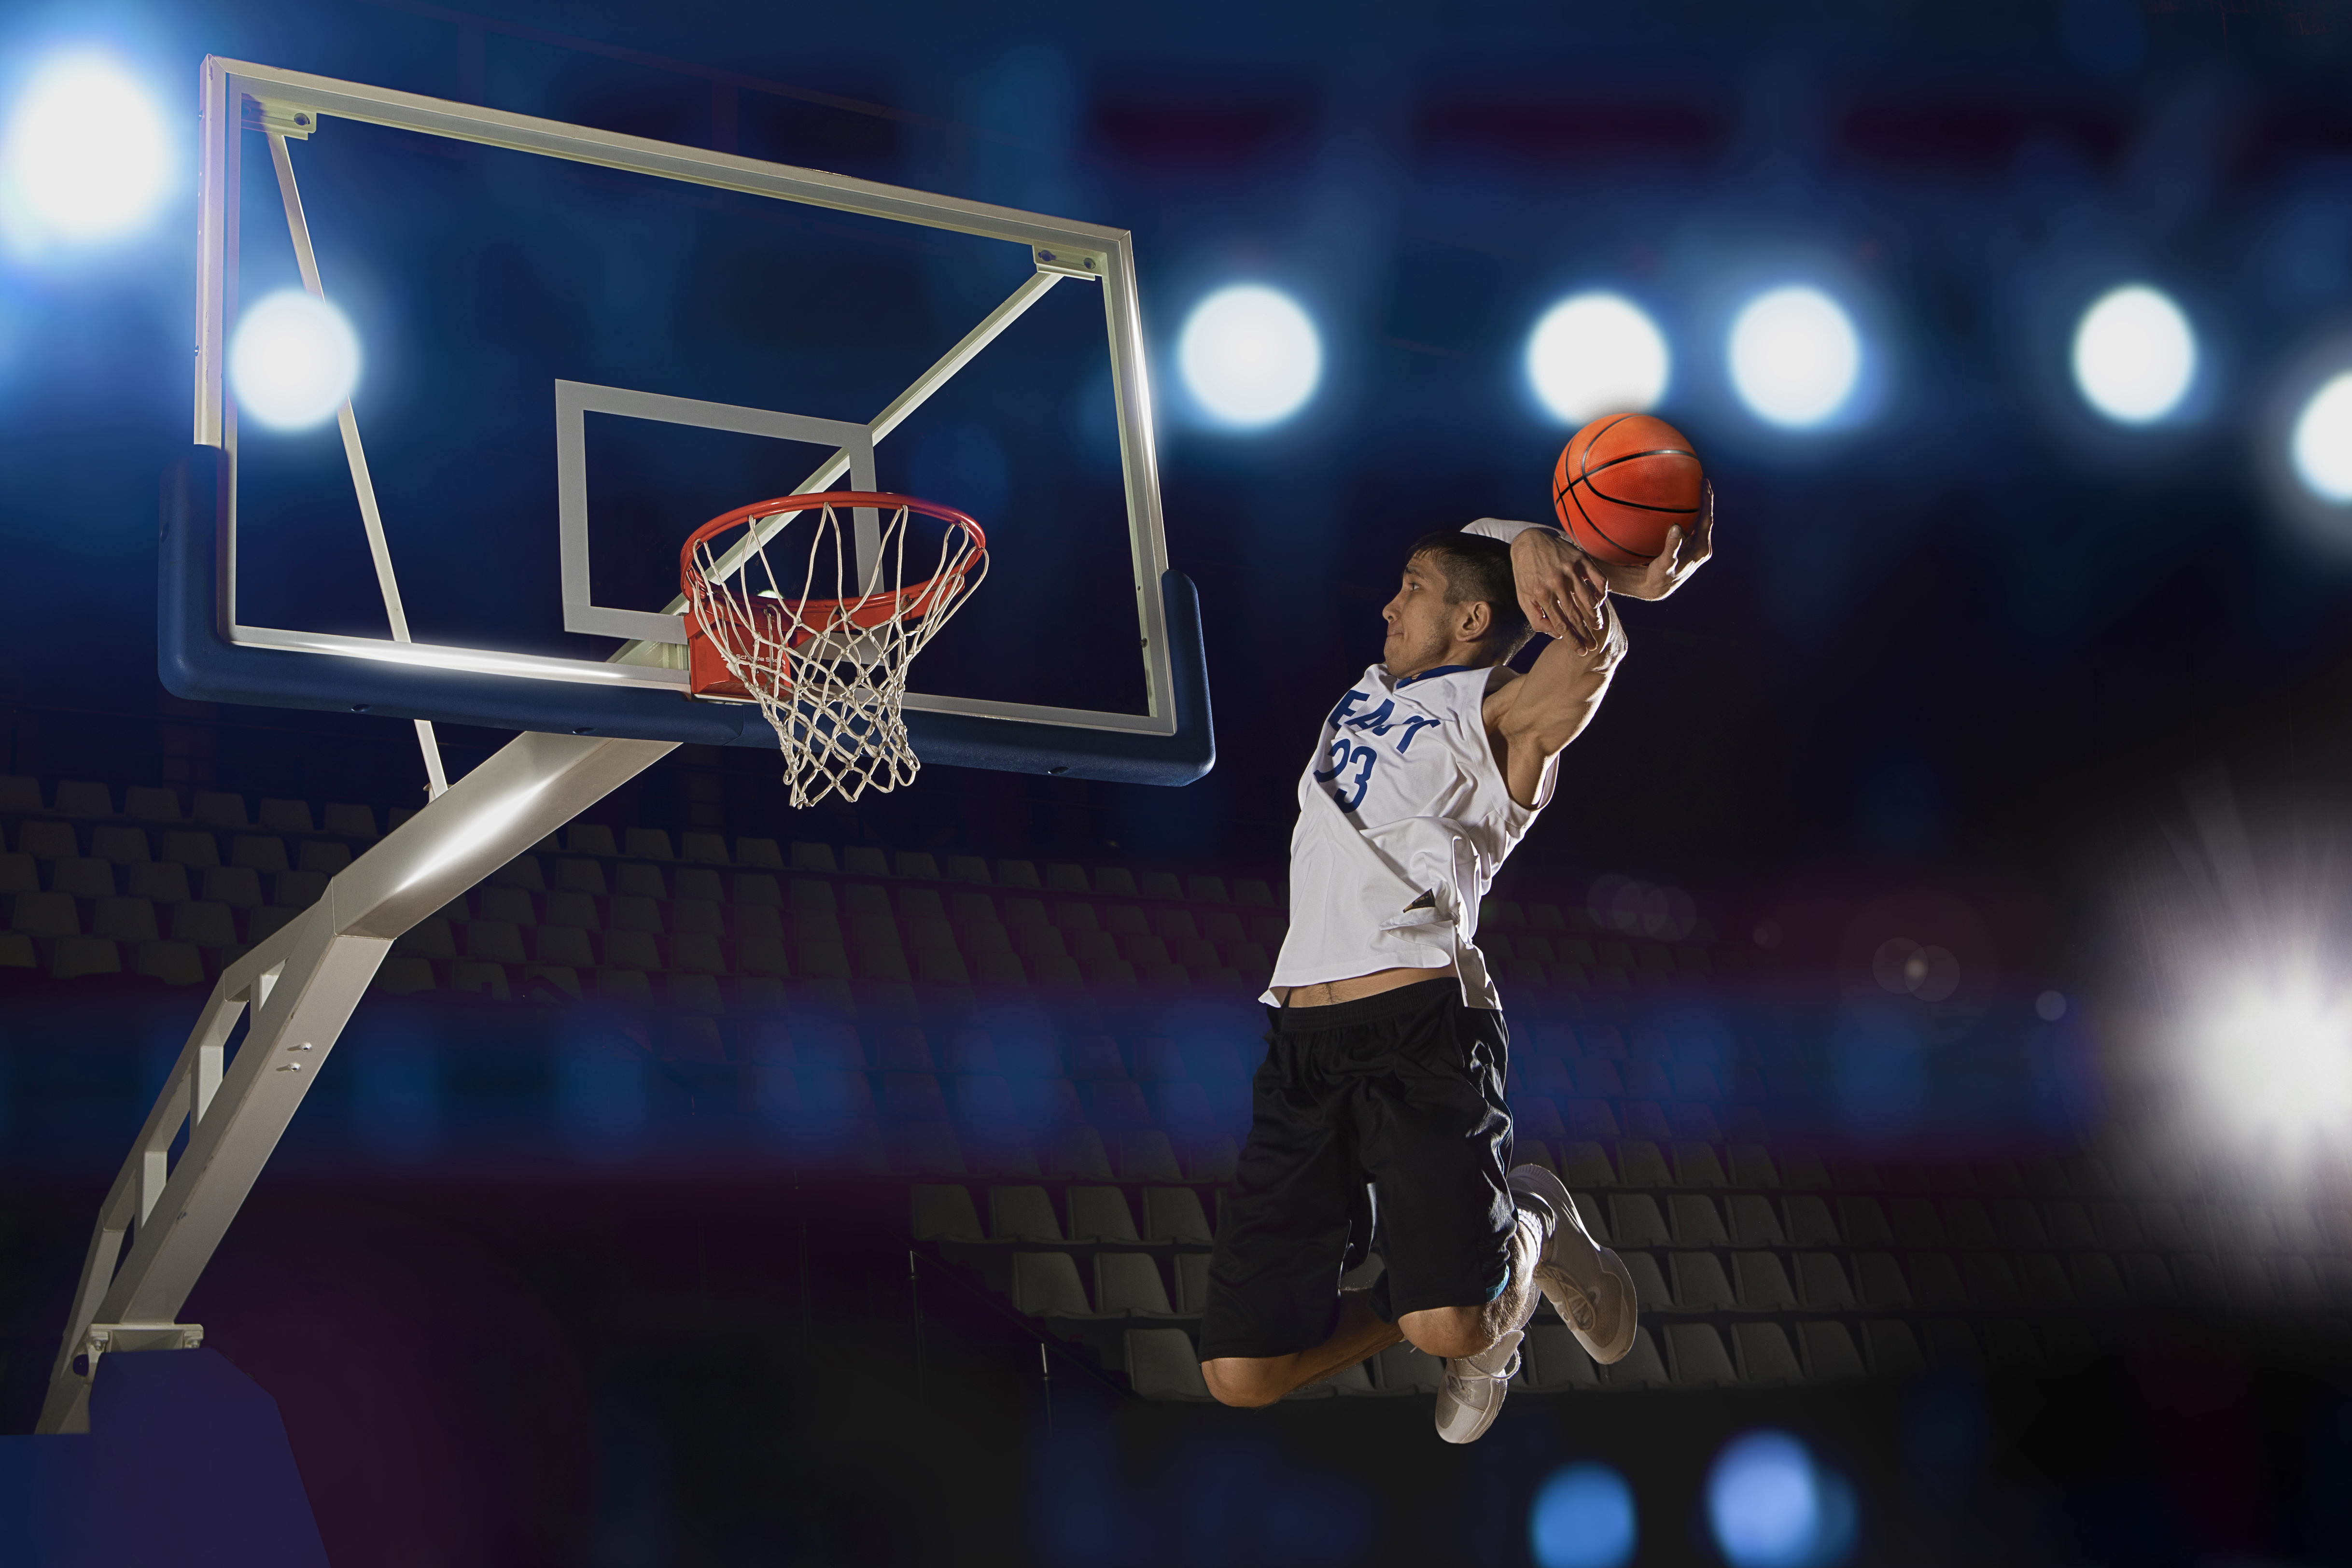 Скачать обои бесплатно Баскетбол, Виды Спорта картинка на рабочий стол ПК